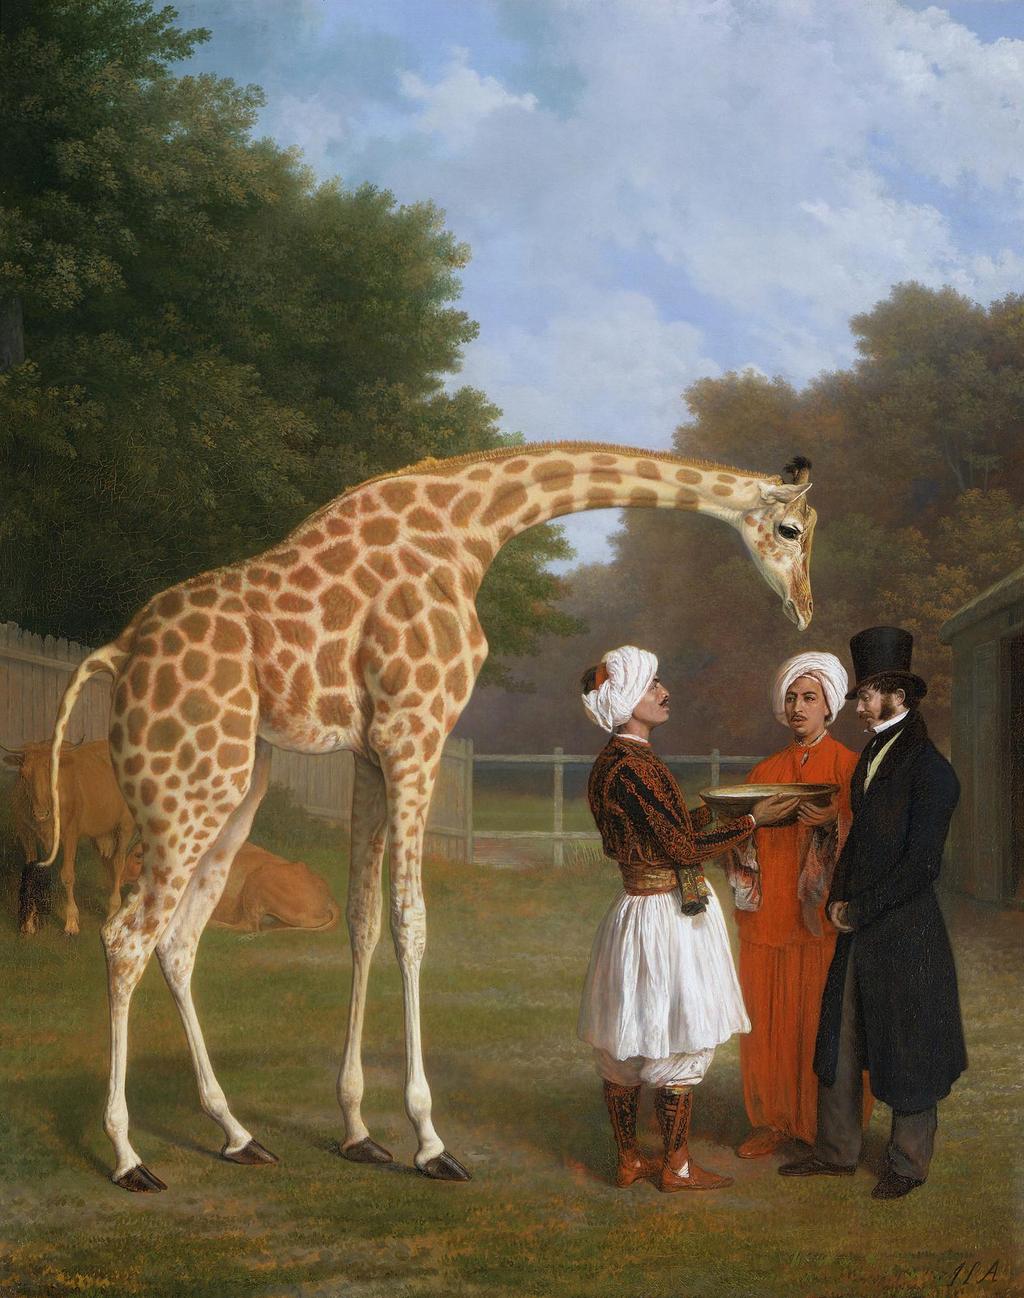 Girafe Taureau 20 cm Animaux Sauvages Bullyland 63710 Nouveauté 2017 